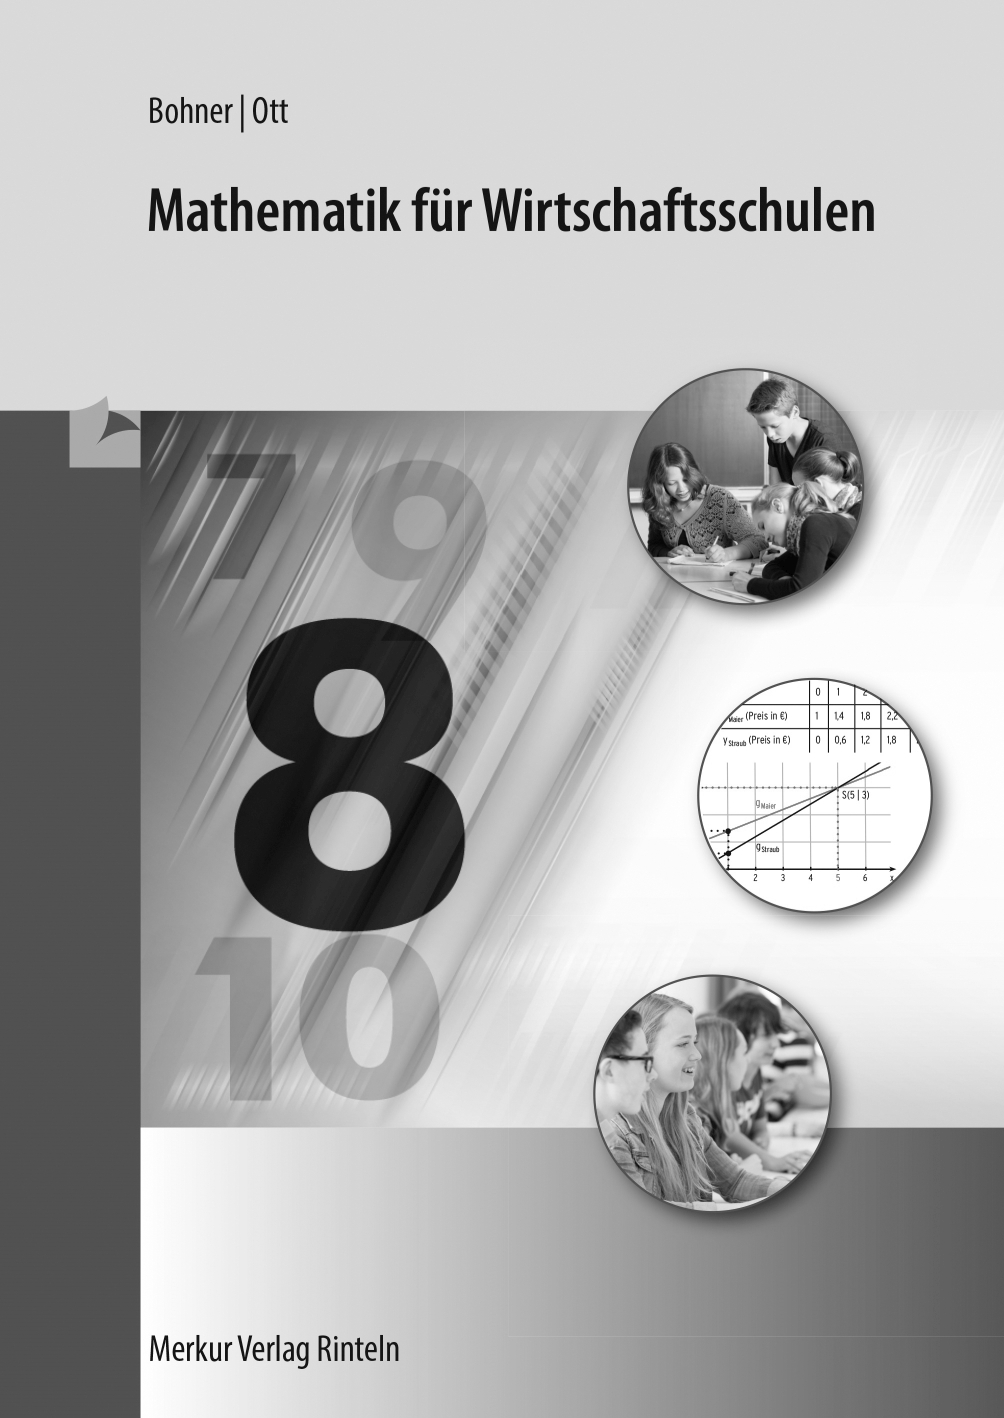 Mathematik für die Wirtschaftsschulen Jahrgangsstufe 8 (Bayern) Lösungen